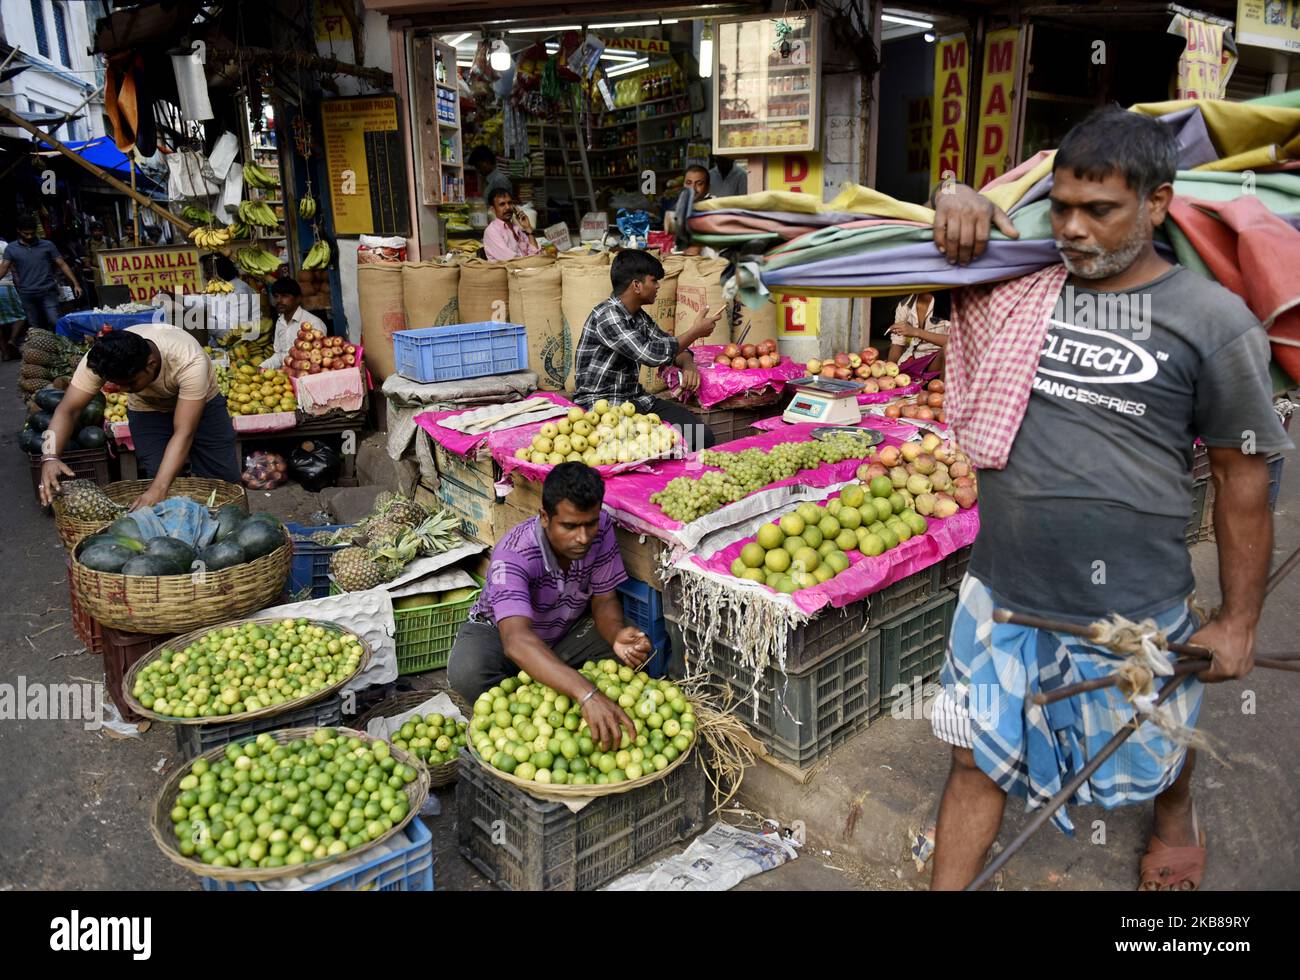 Ein Großhandelsmarkt in Kalkutta, Indien, 14. Oktober 2019. Die Inflation im Einzelhandel stieg im September aufgrund der höheren Lebensmittelpreise auf 3,99 Prozent, wie die Daten der Regierung am Montag zeigten. Dies ist laut einem indischen Medienbericht die höchste Inflationsrate im Einzelhandel, die seit Oktober 2018 erreicht wurde. (Foto von Indranil Aditya/NurPhoto) Stockfoto